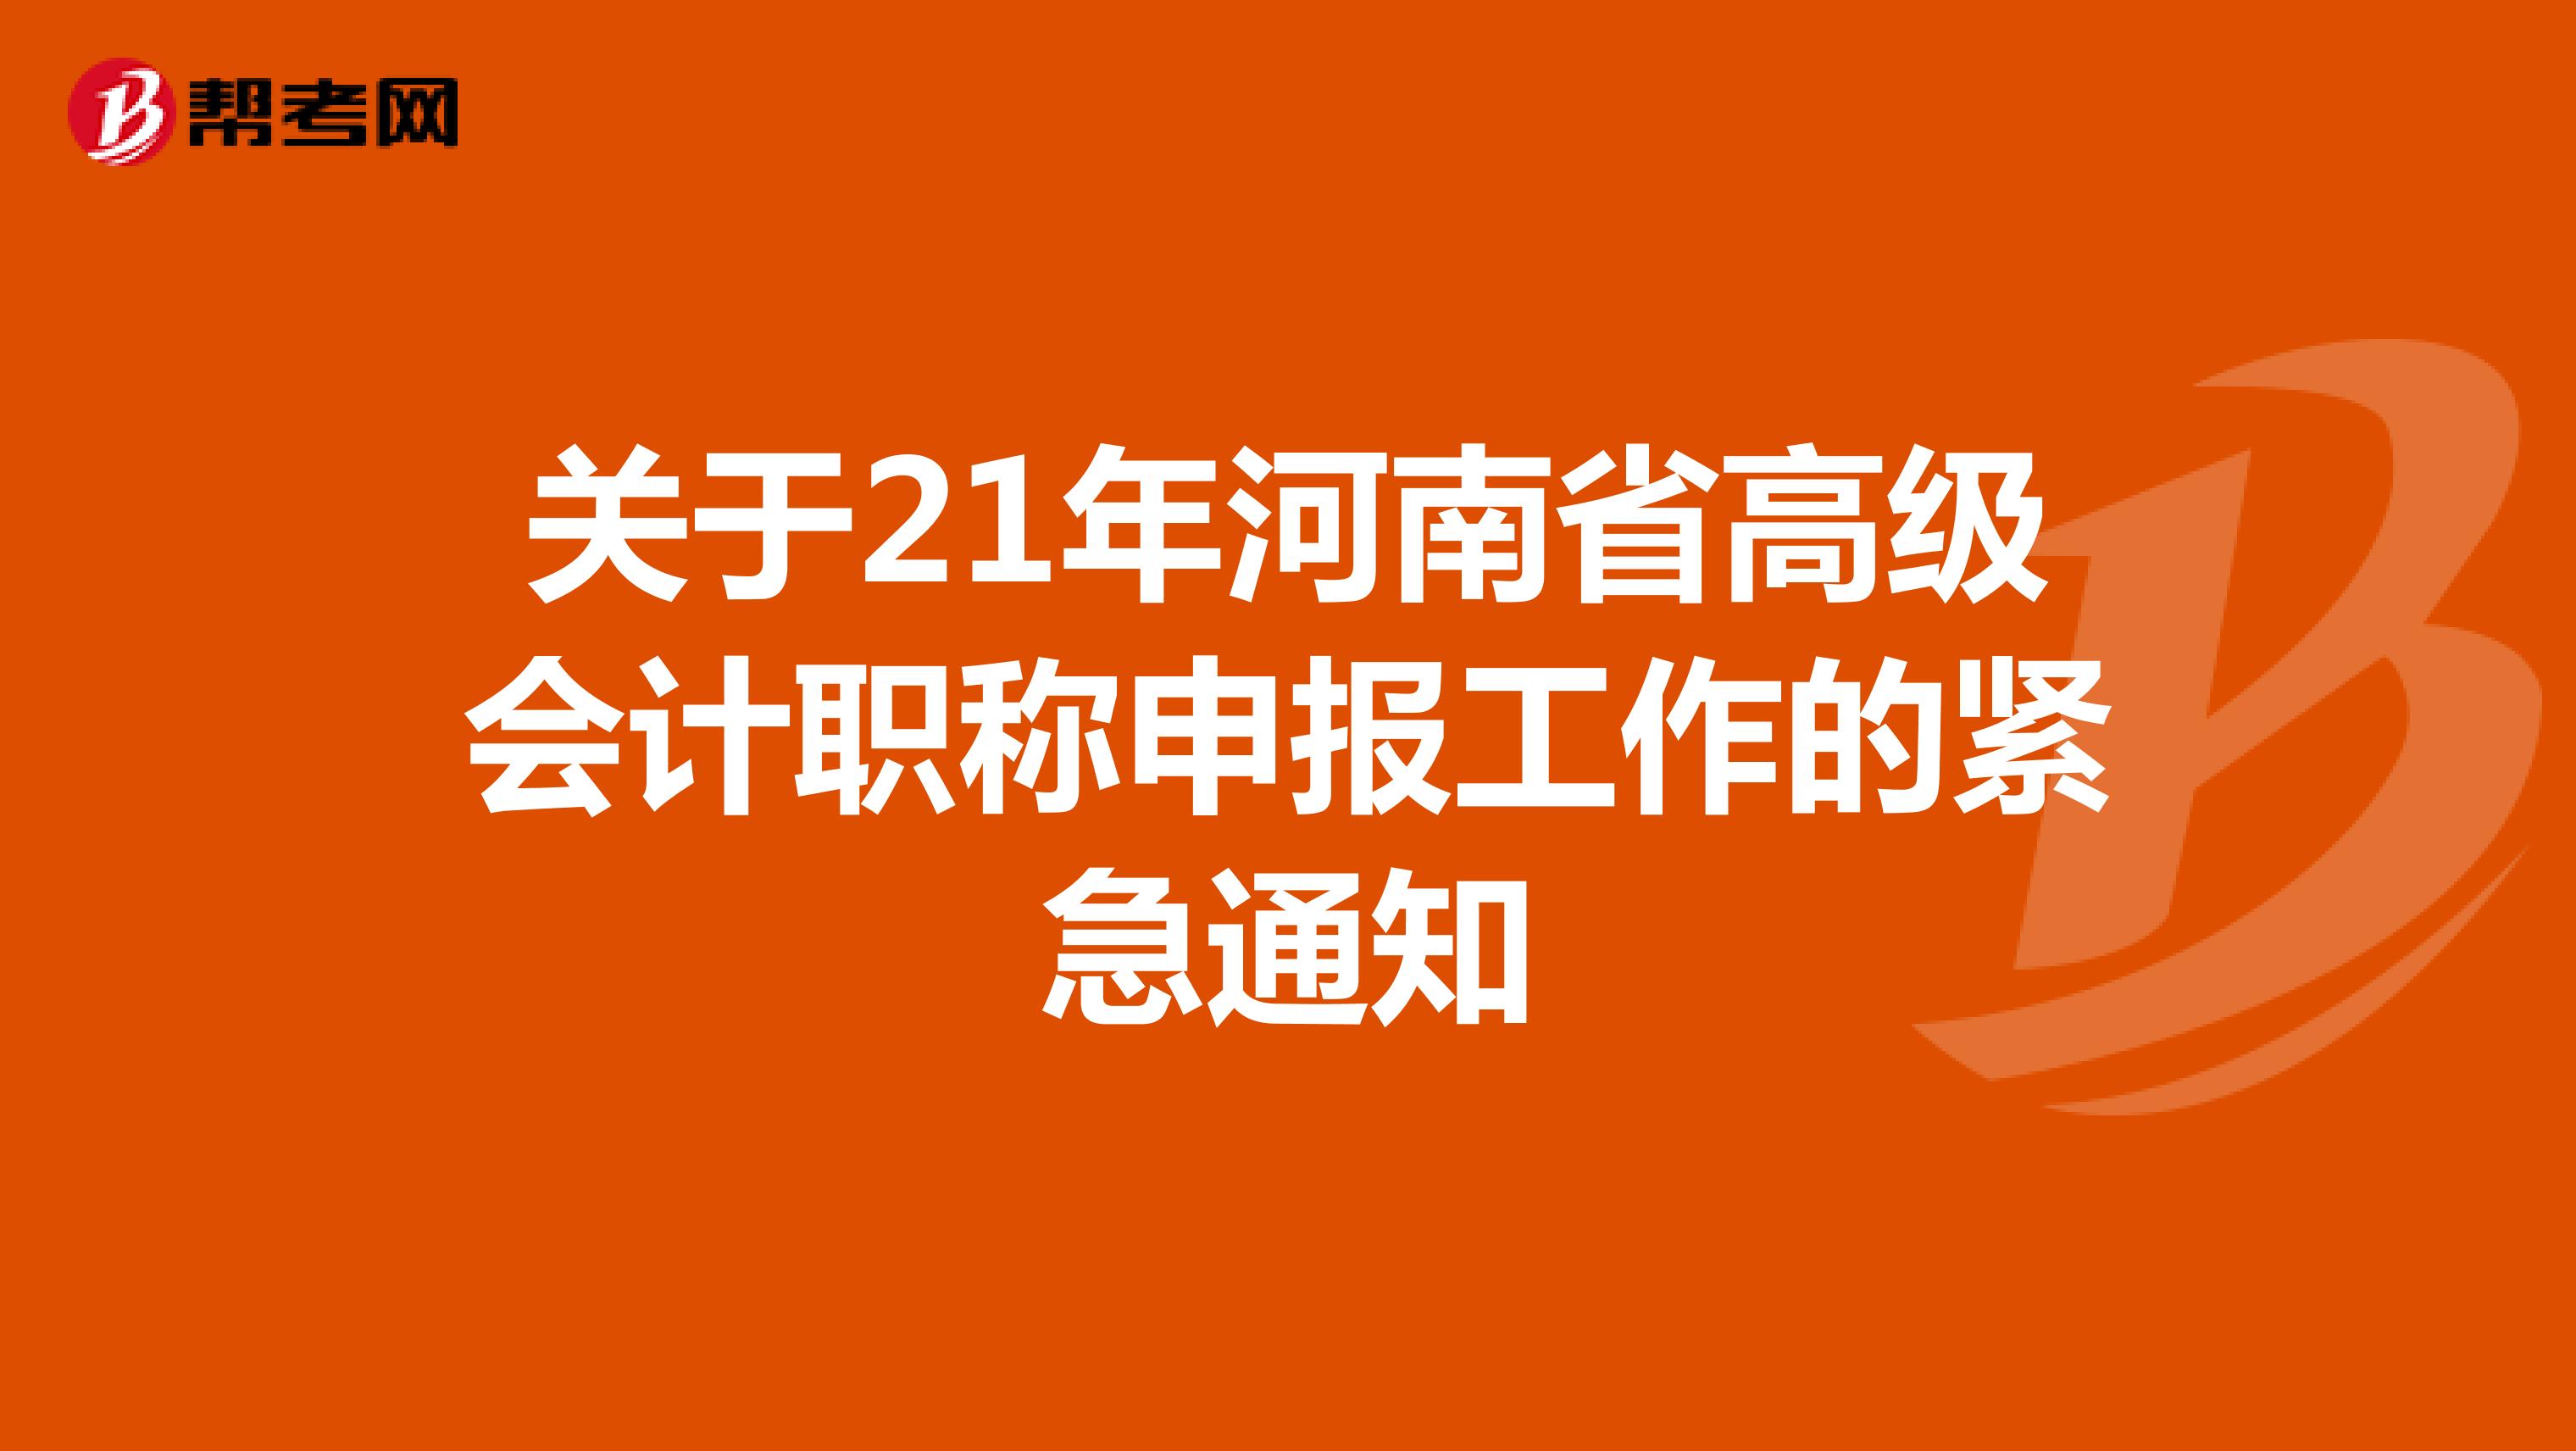 关于21年河南省高级会计职称申报工作的紧急通知